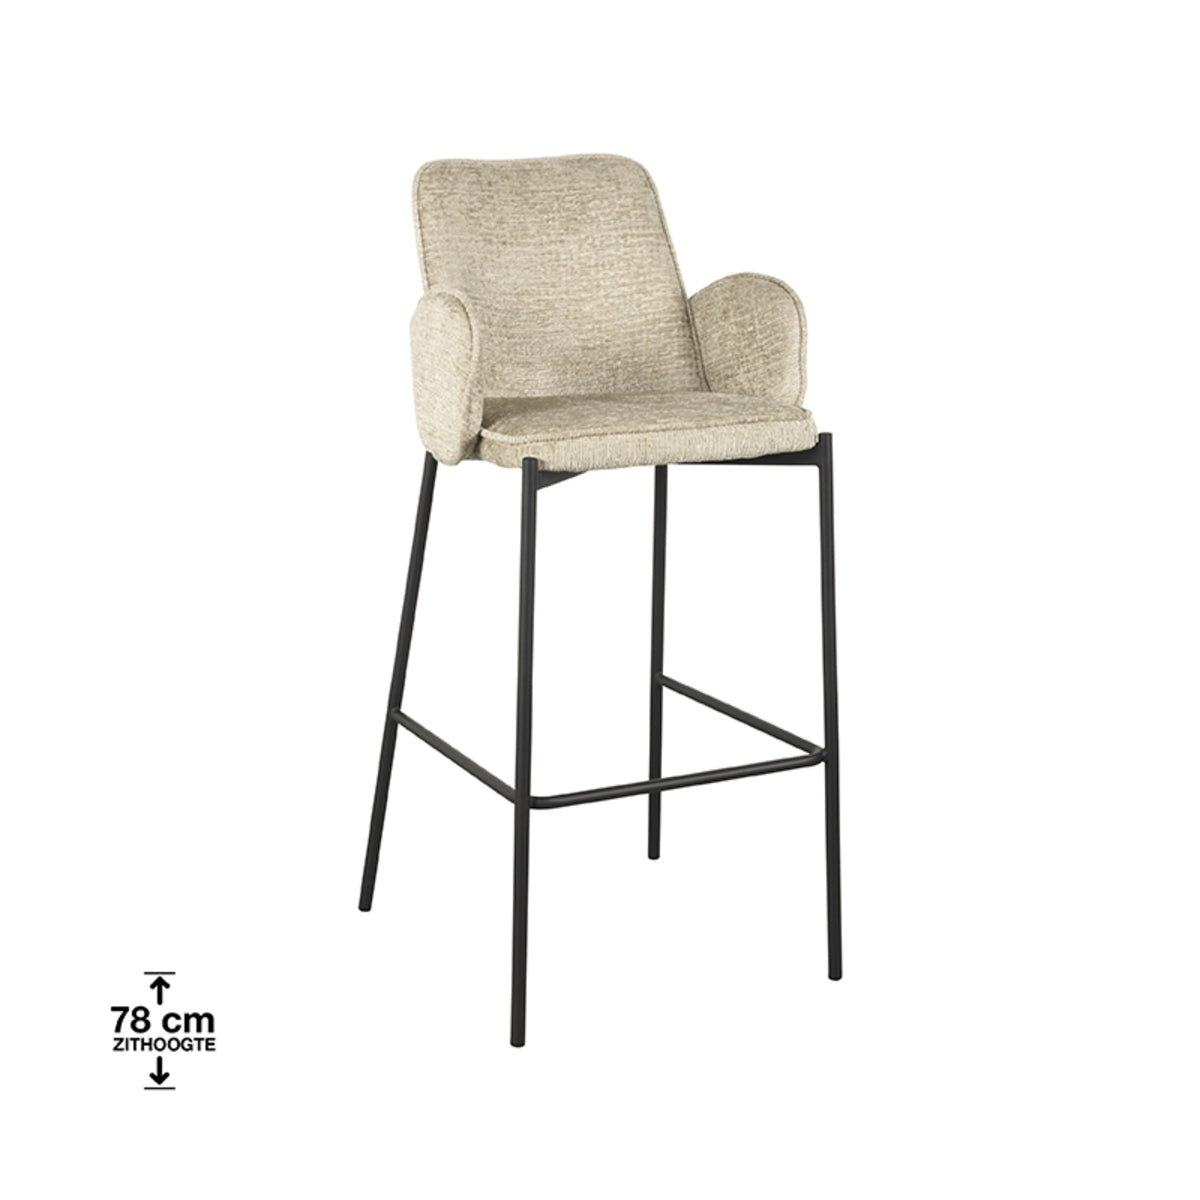 LABEL51 Bar stool Joni - Beige - Velvet - Seat height 78 cm |